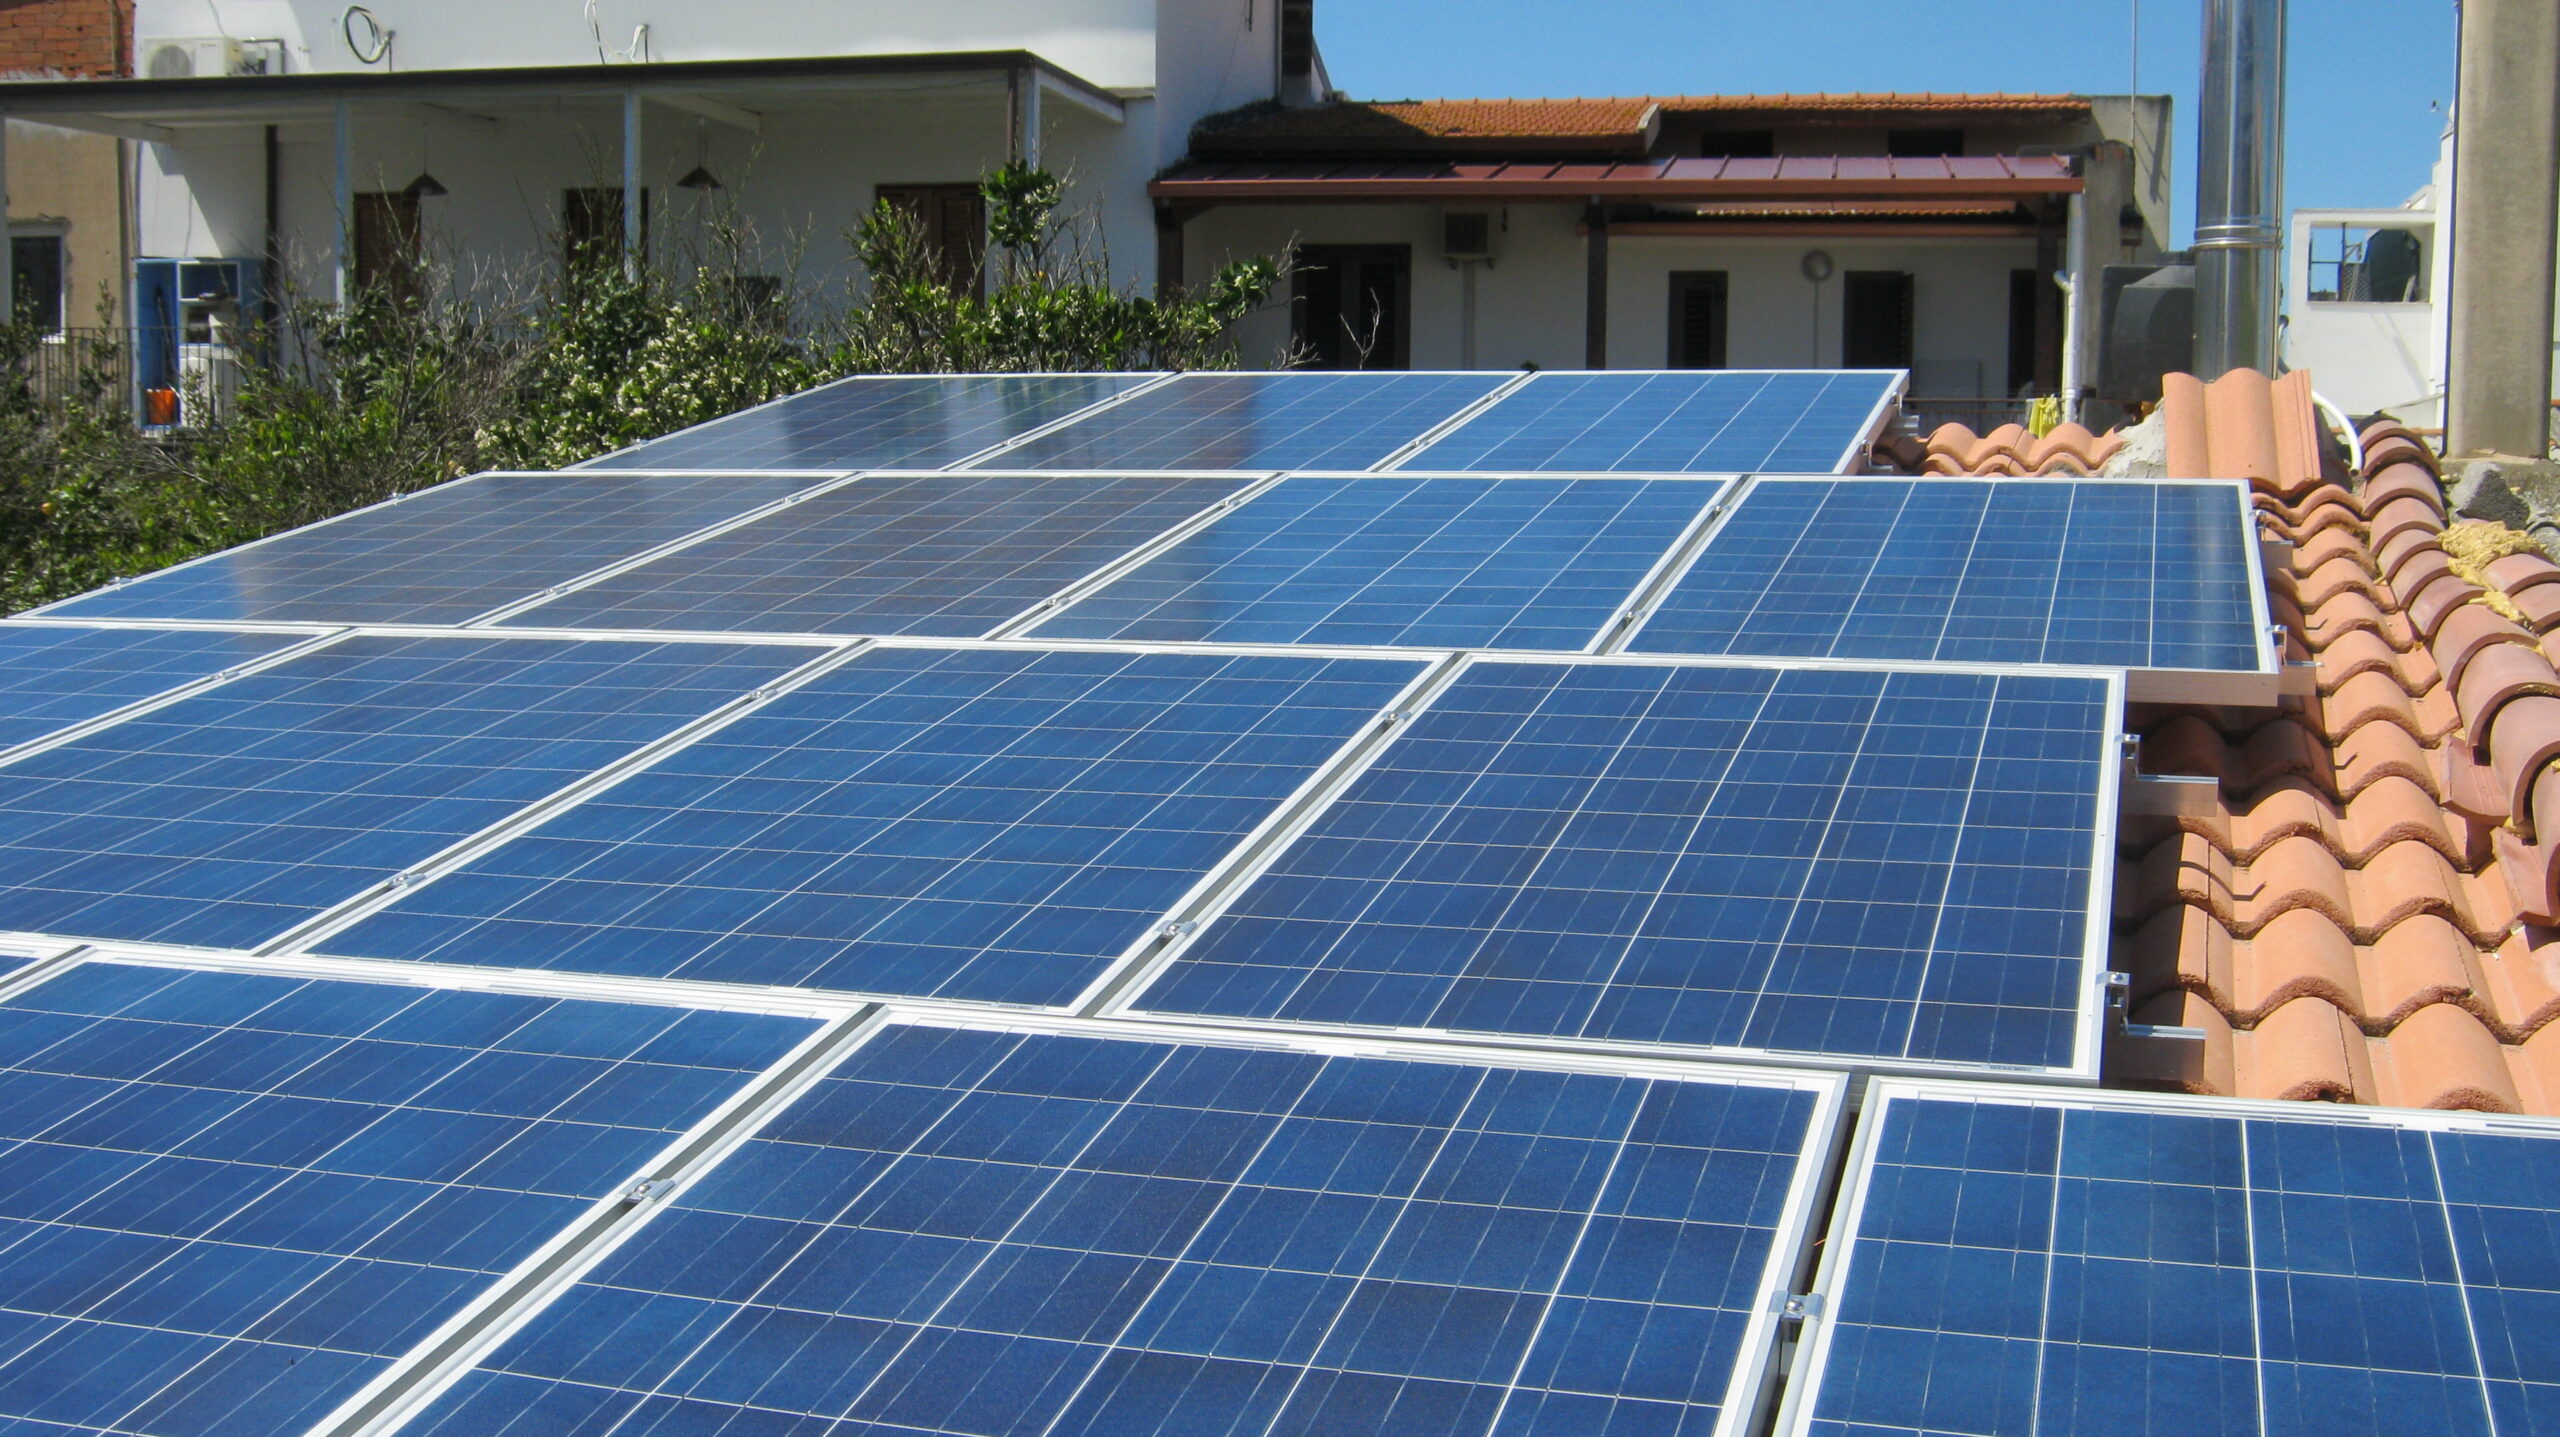 fotovoltaico installazione impianto a San Nicolo d'Arcidano - Oristano 4KW